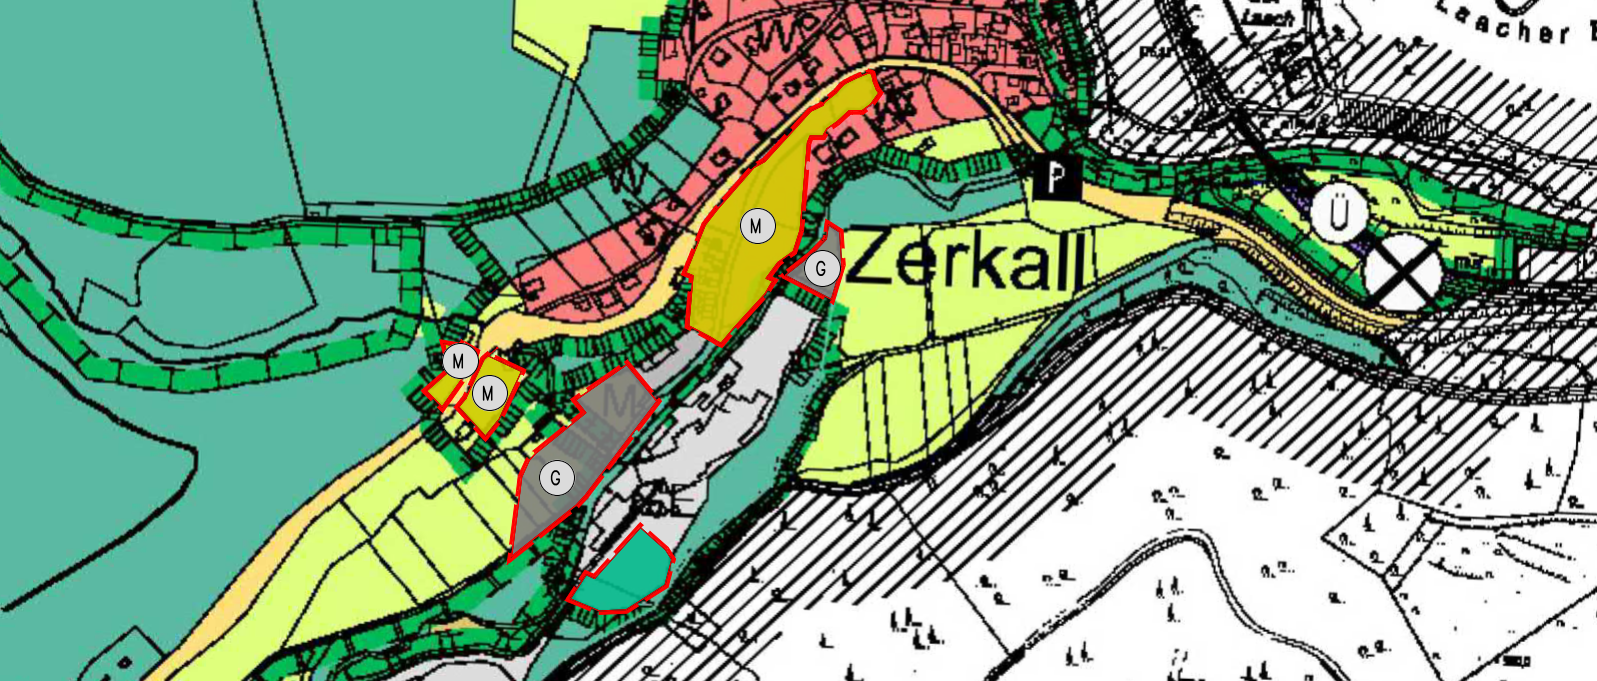 Gemeinde Hürtgenwald - 16. Änd. FNP Papierfabrik Zerkall 